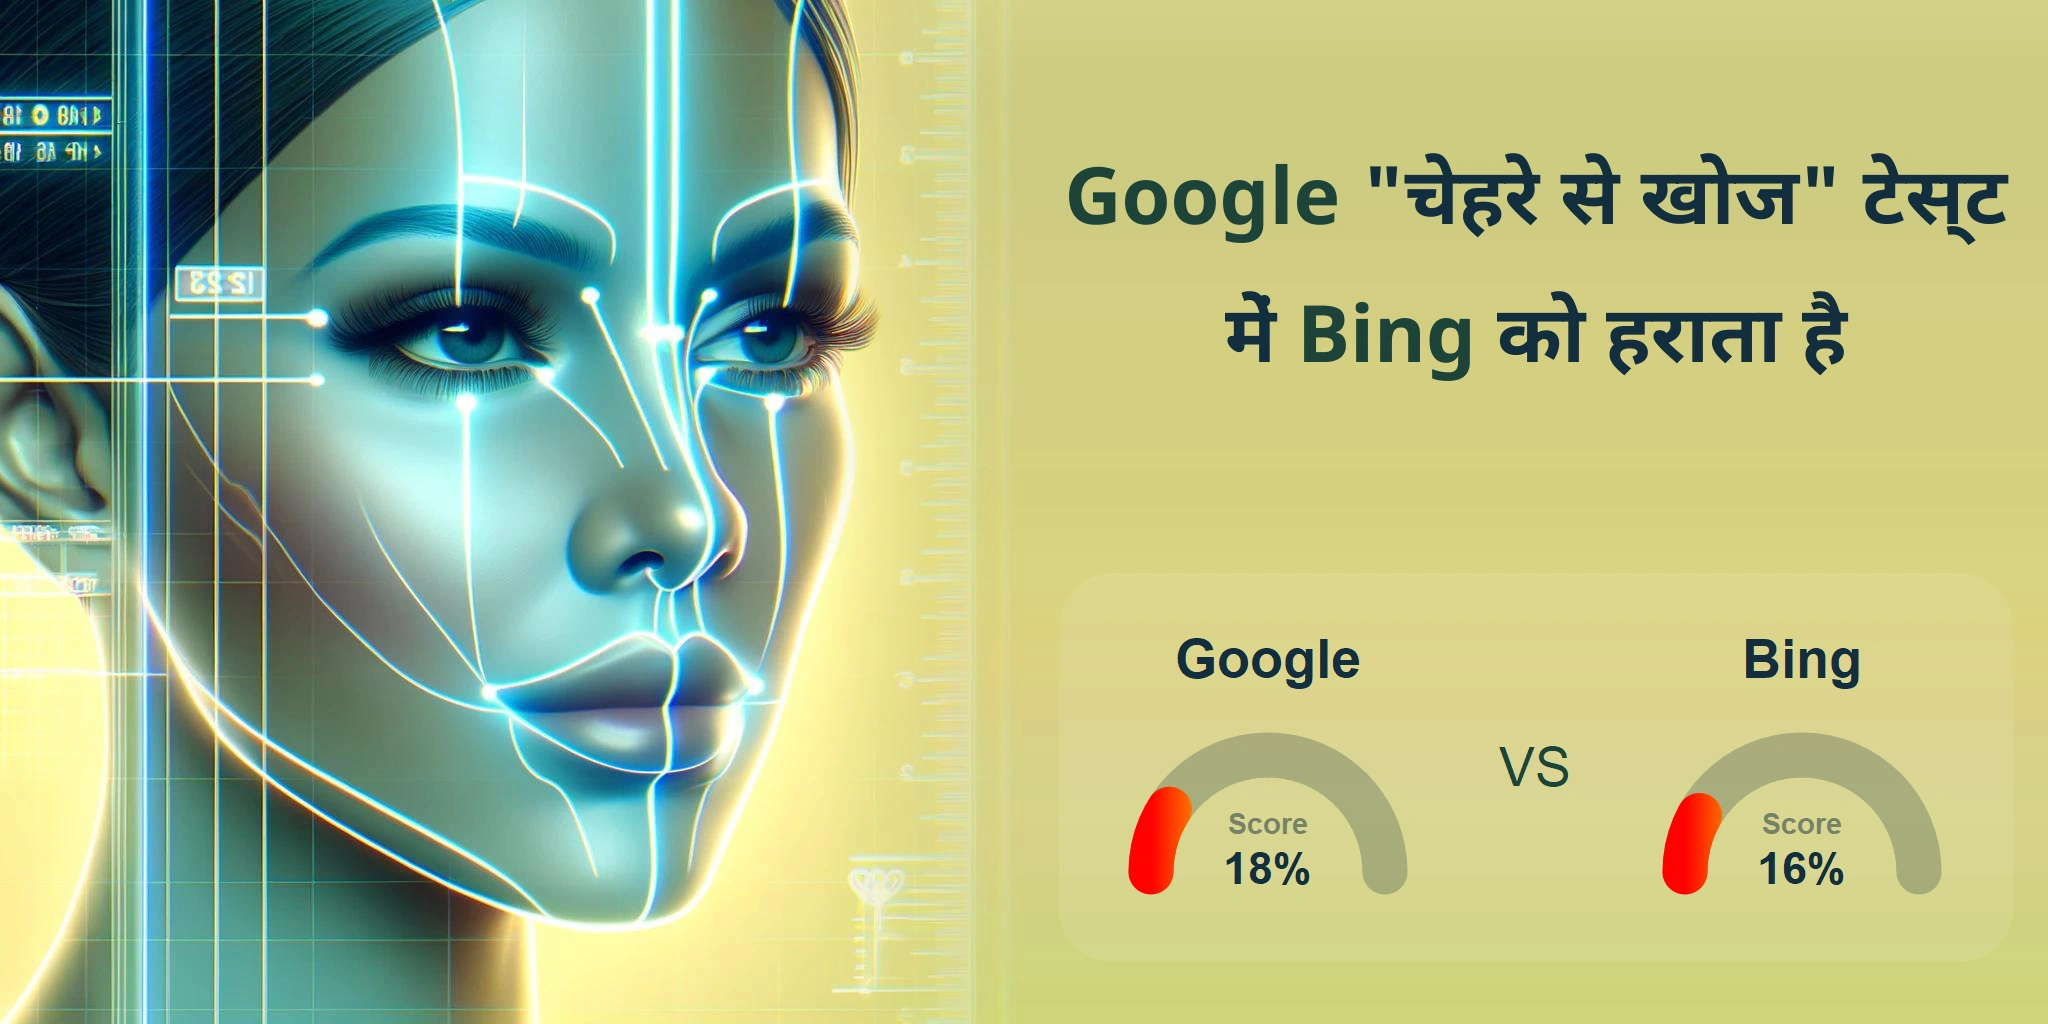 चेहरे की खोज के लिए कौन बेहतर है: <br>Google या Bing?